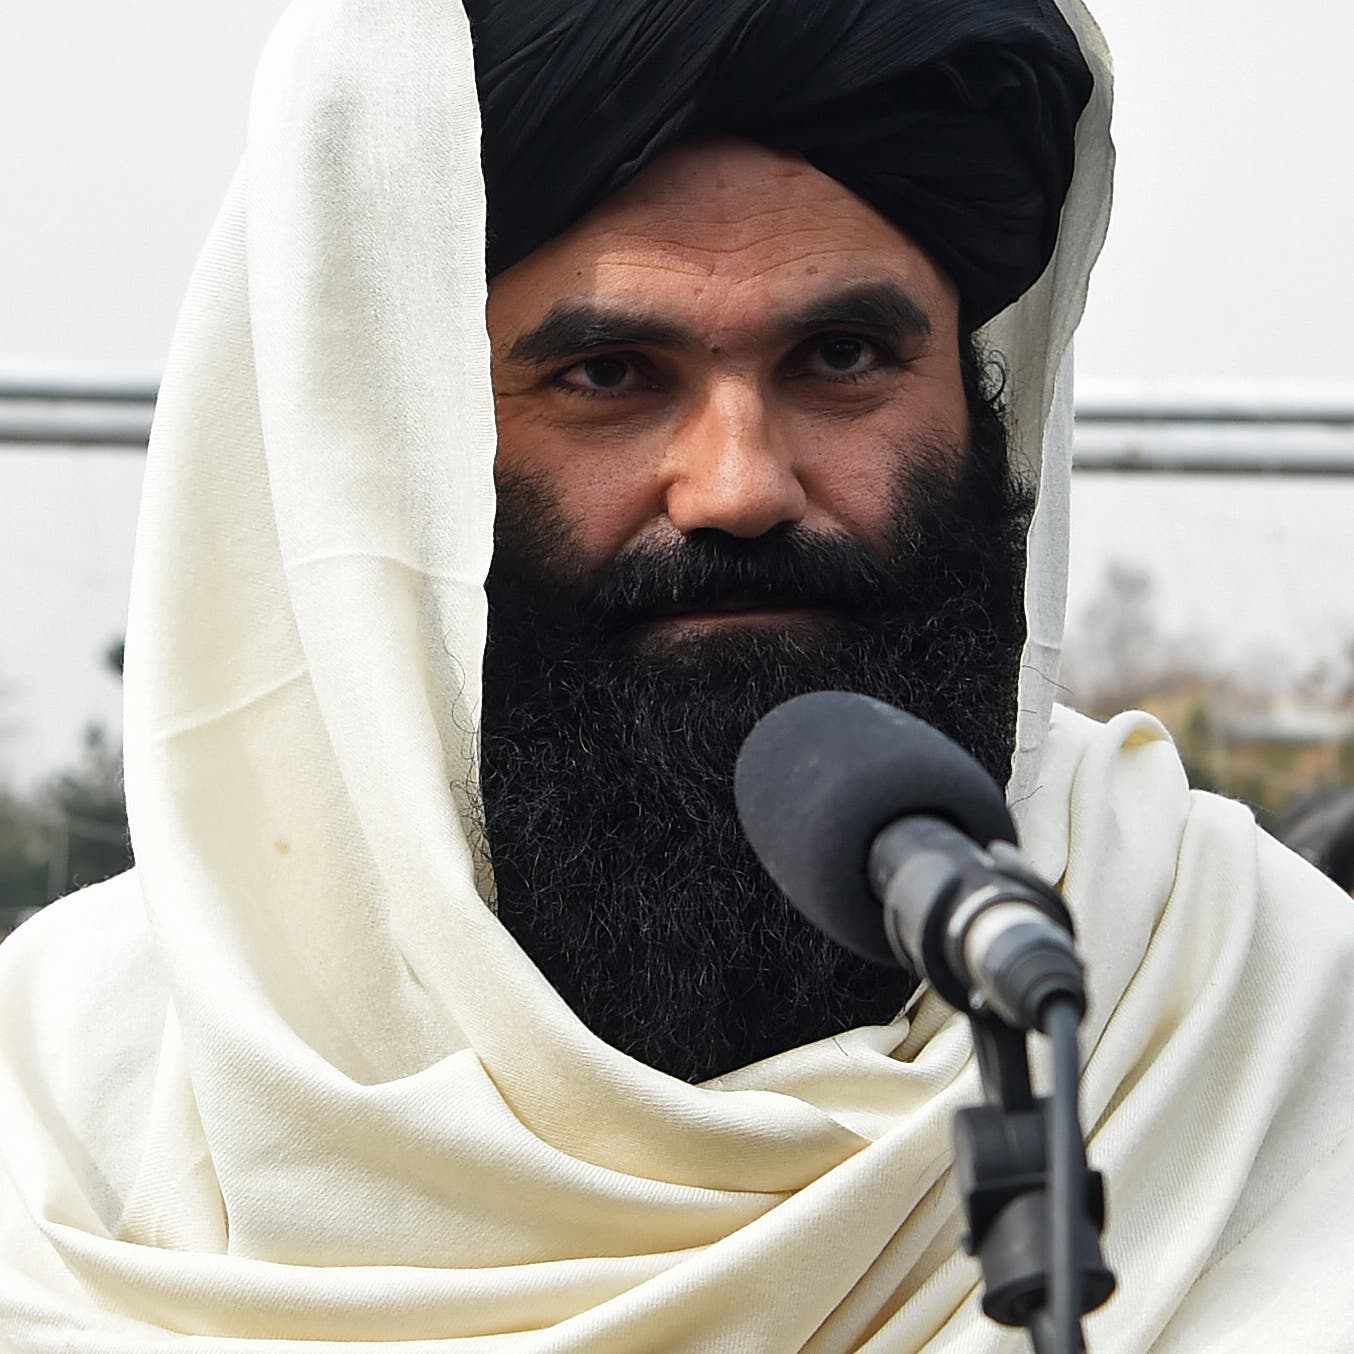 لأول مرة.. صور تكشف الوجه الحقيقي لأكثر قادة طالبان تشدداً